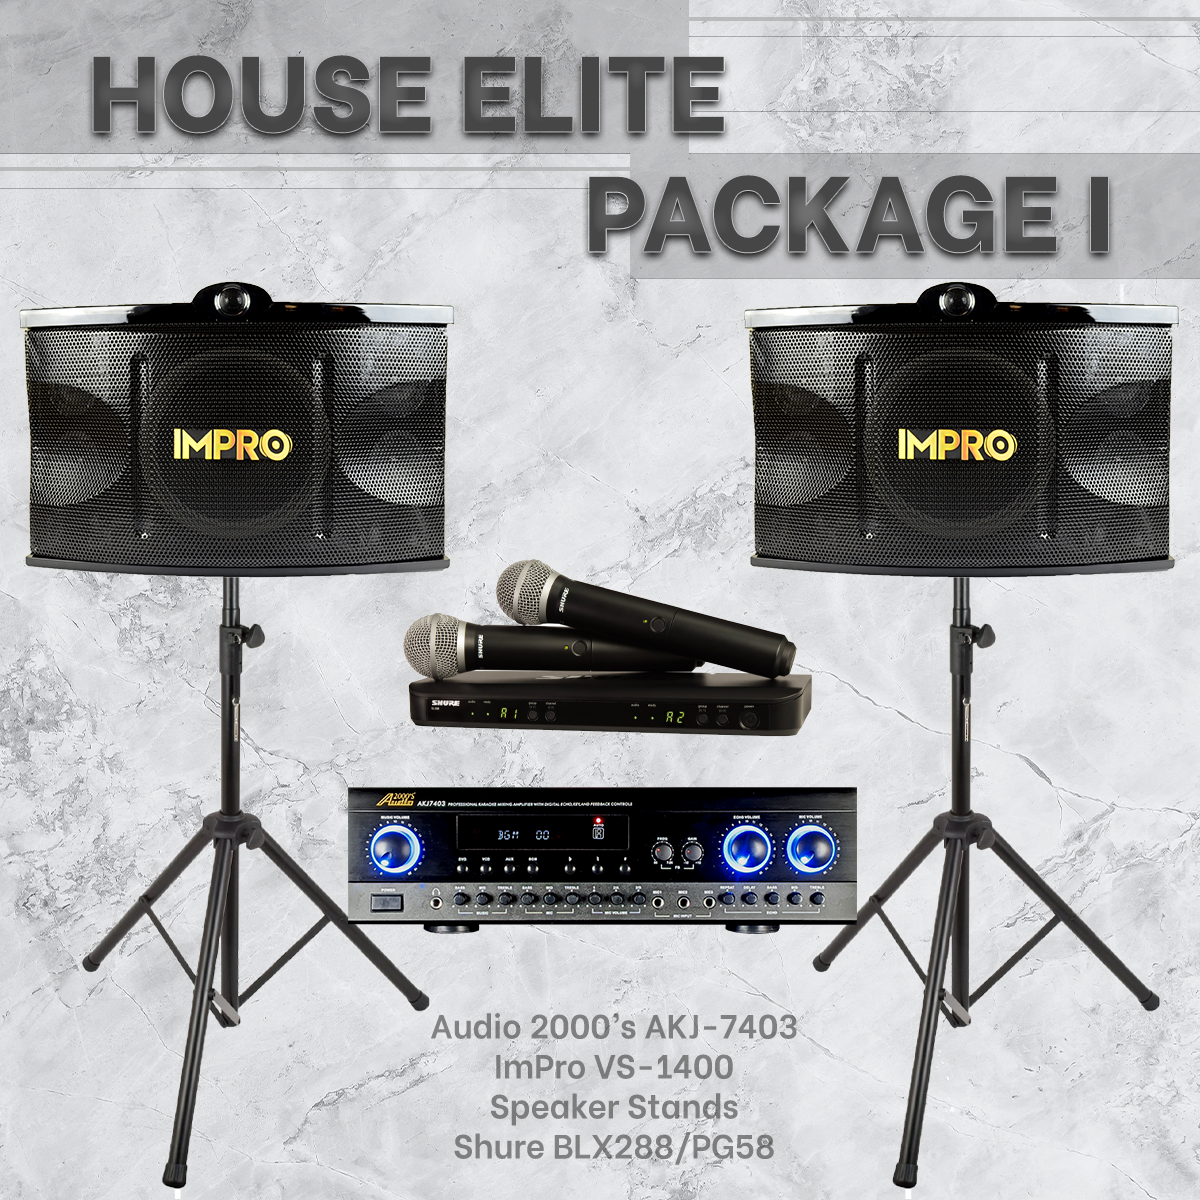 Gói House Elite #01: Audio2000's AKJ-7403 + ImPro VS-1400 + Chân đế + Micro Shure BLX